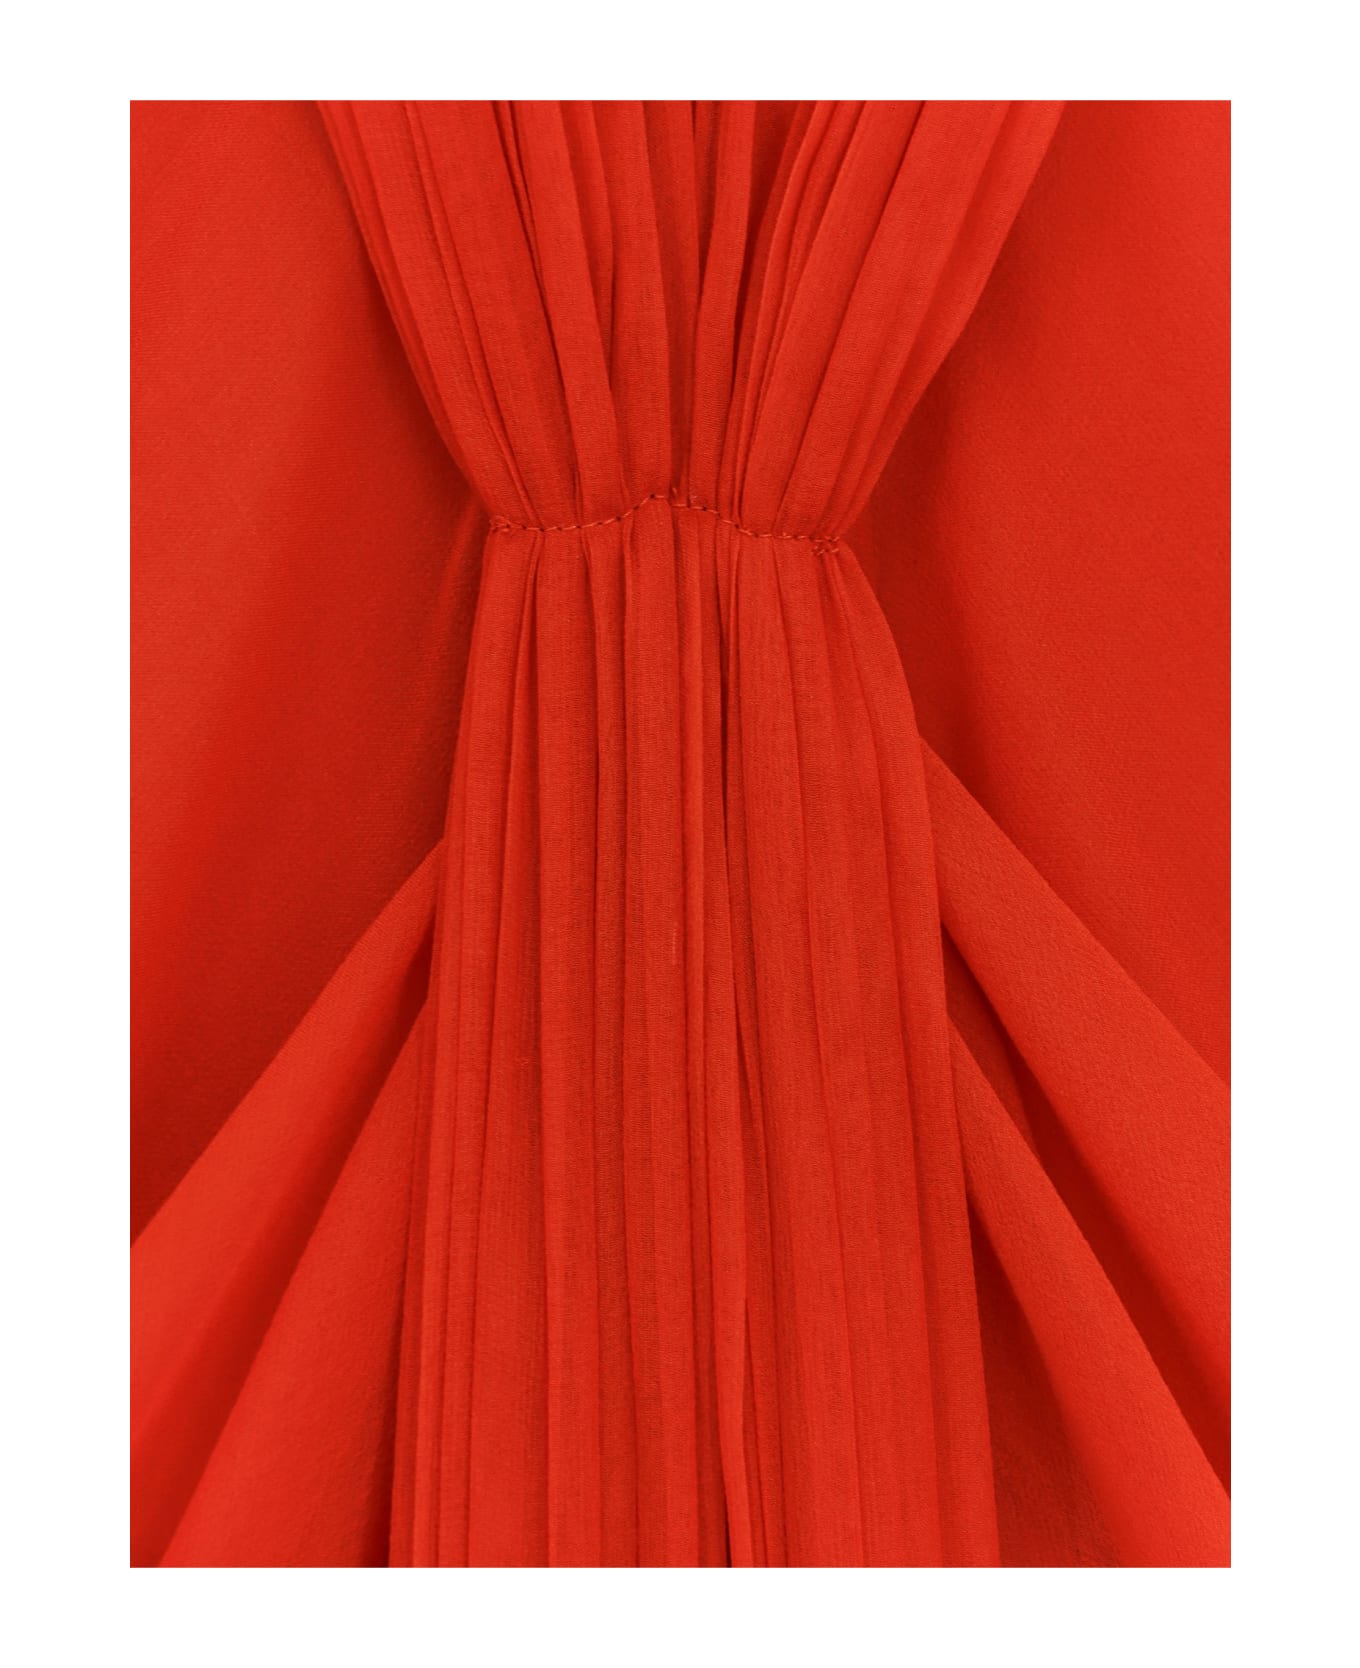 Alberta Ferretti Dress - Red